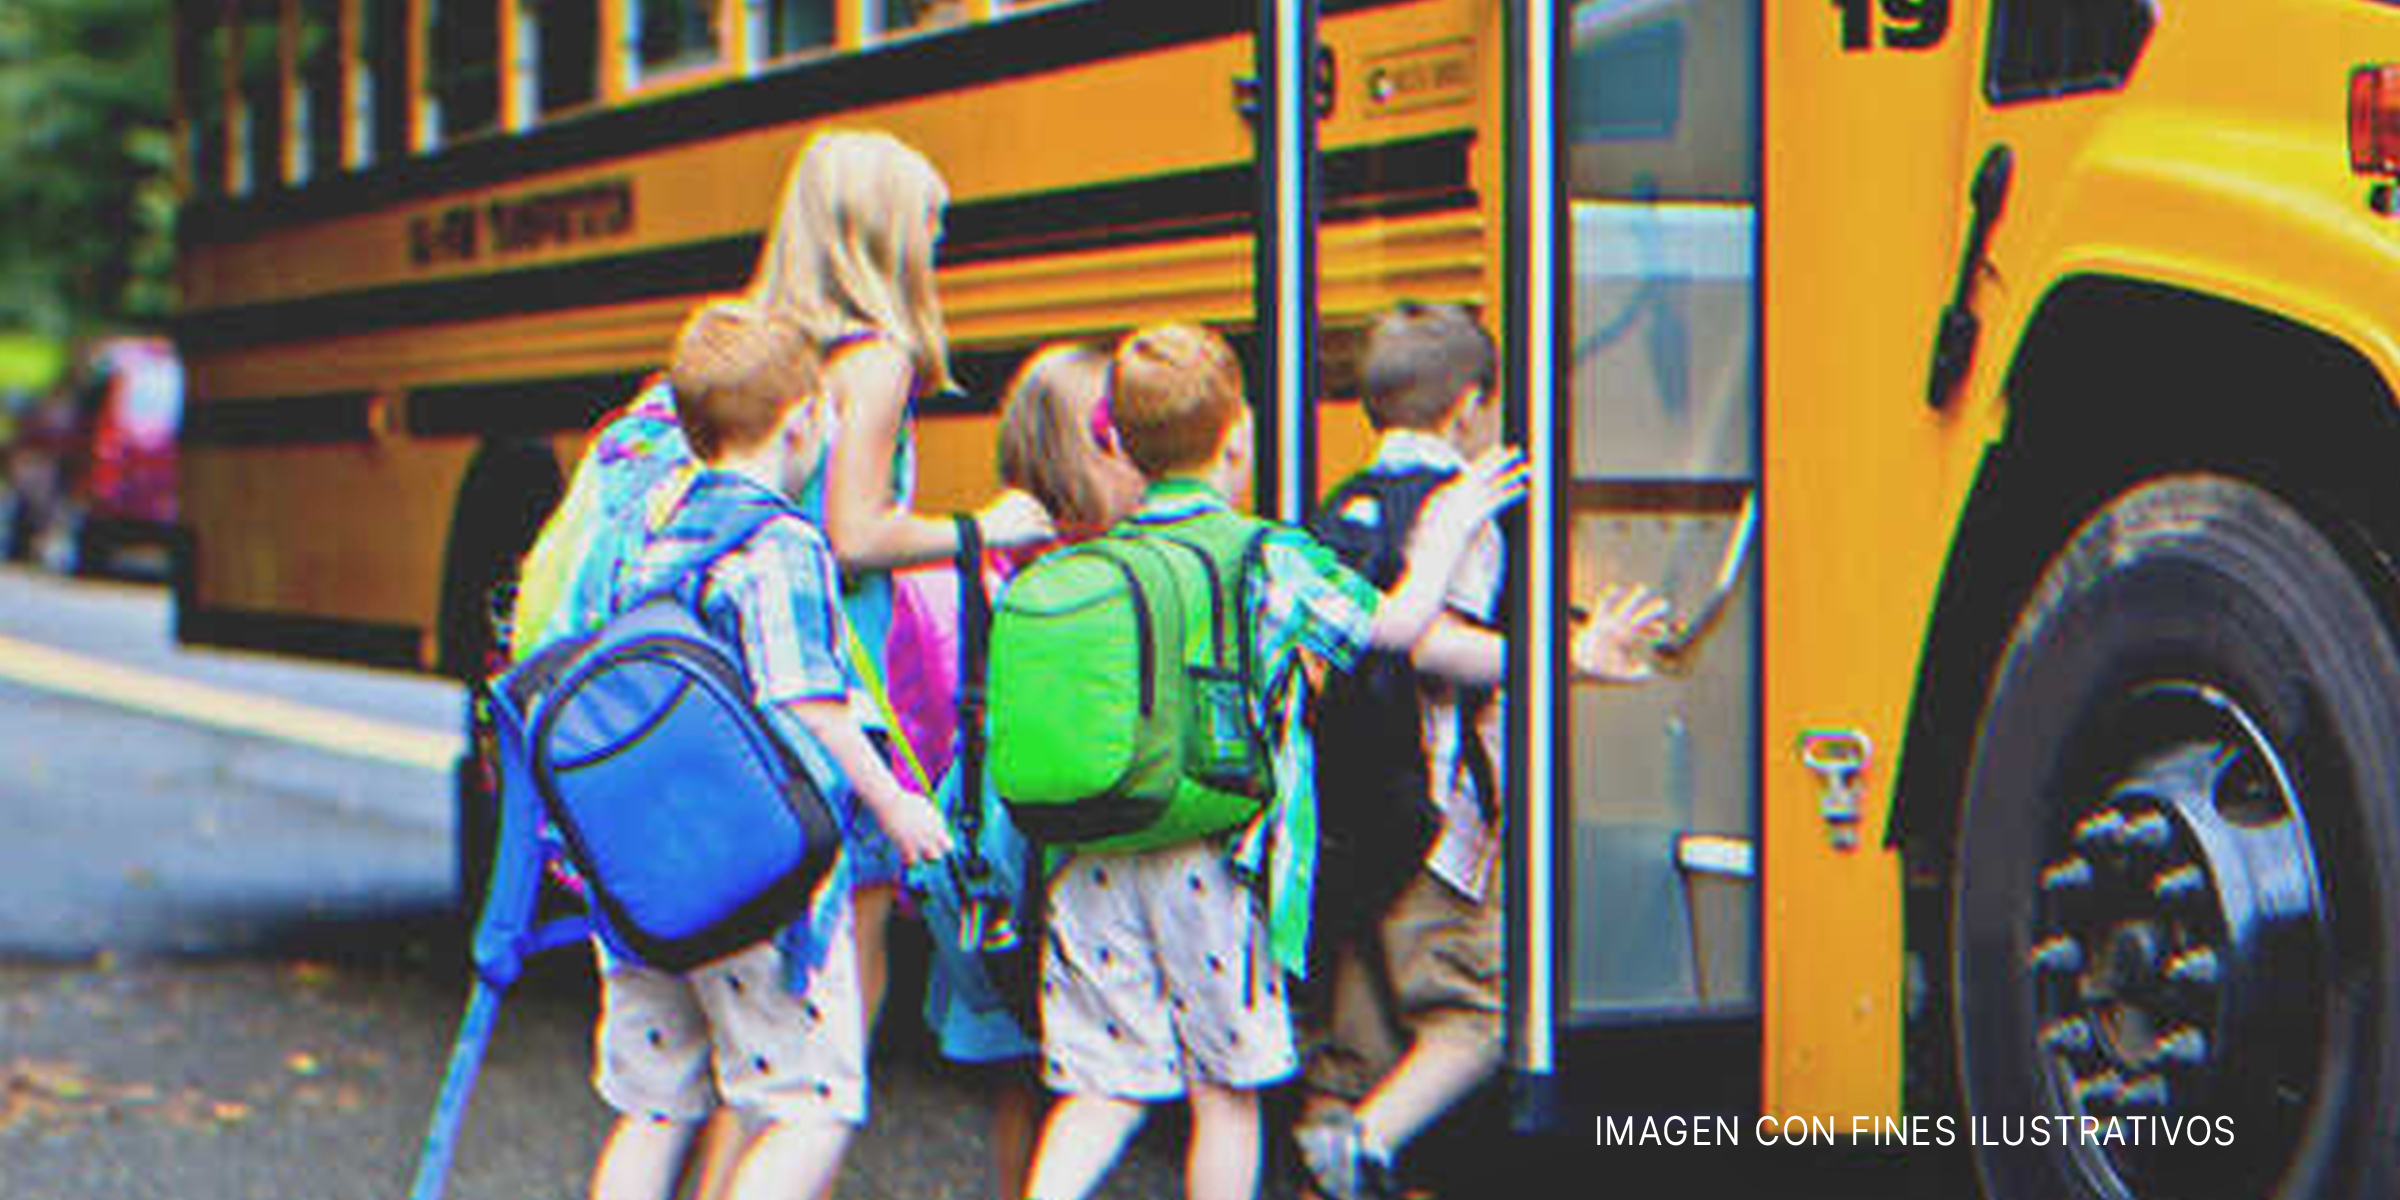 Niños subiendo a un autobús escolar. | Foto: Shutterstock